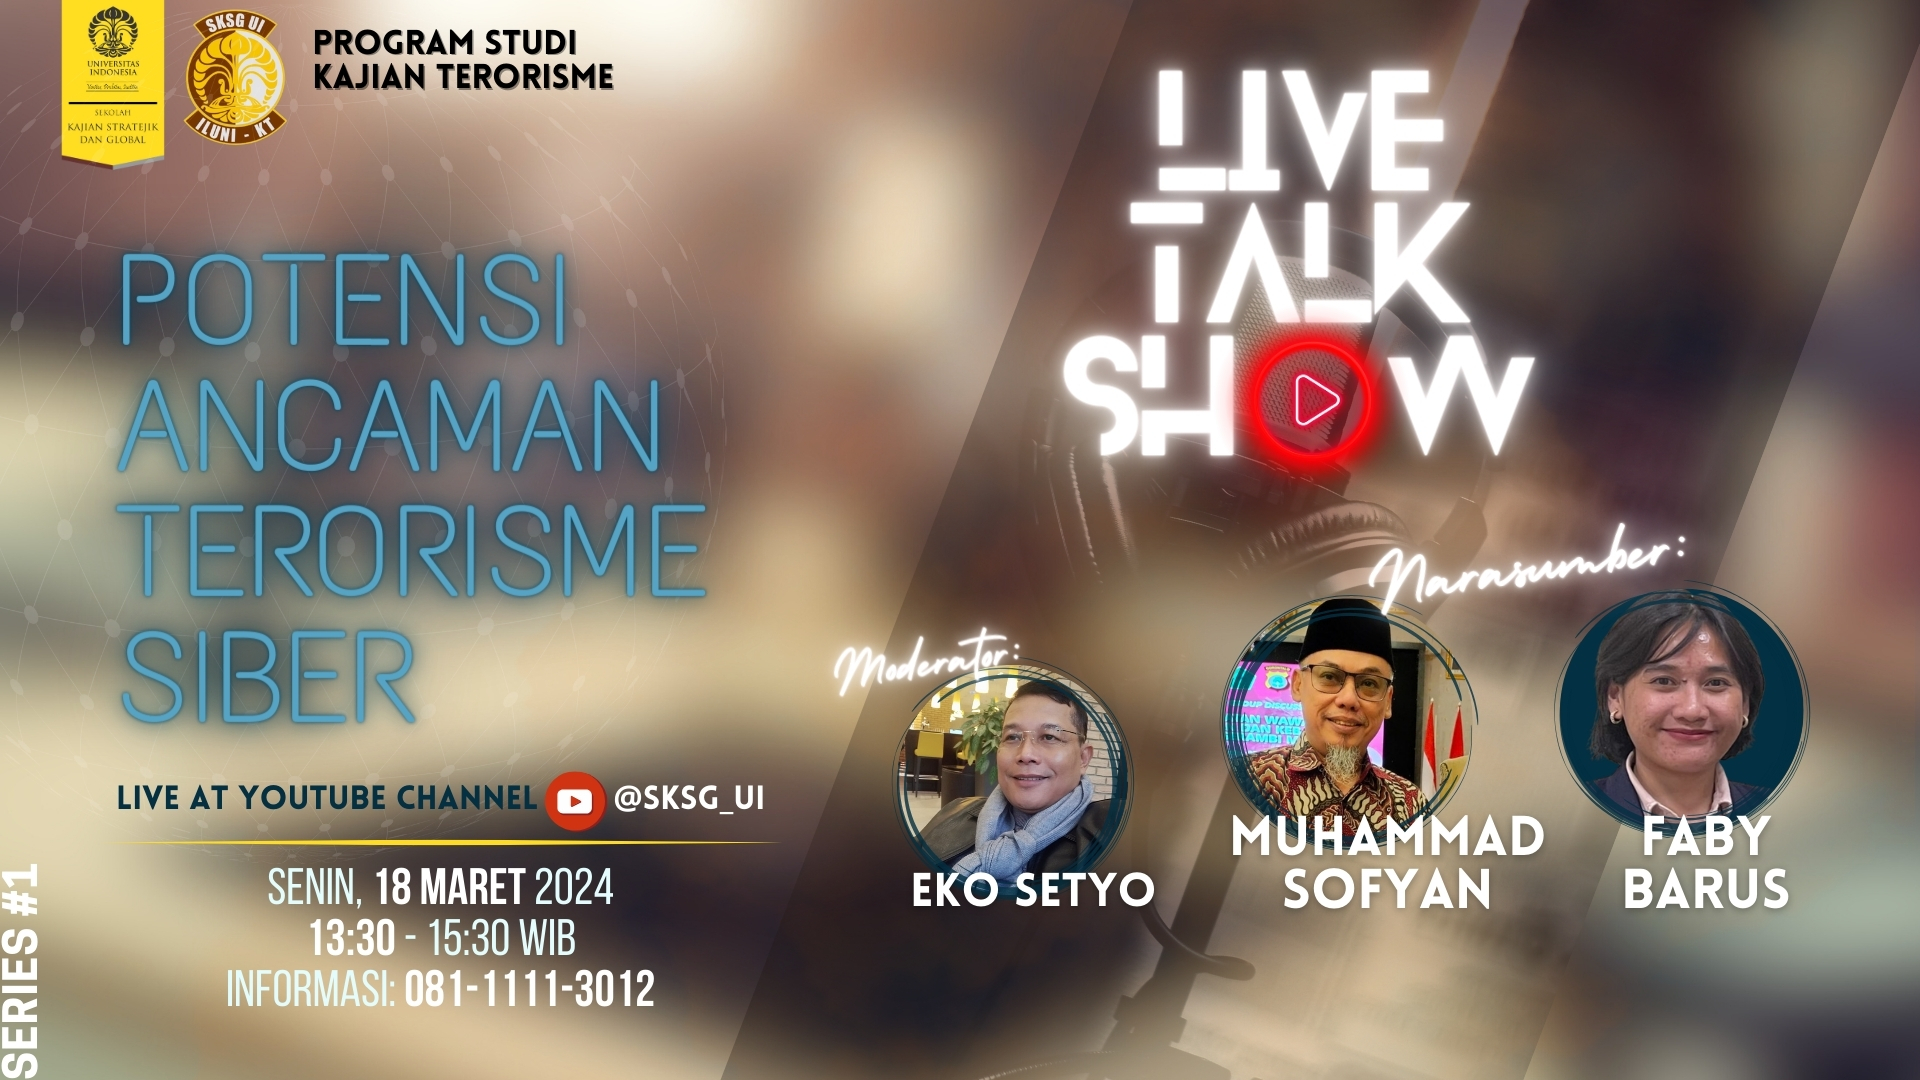 Live TalkShow (1920 x 1080 px)